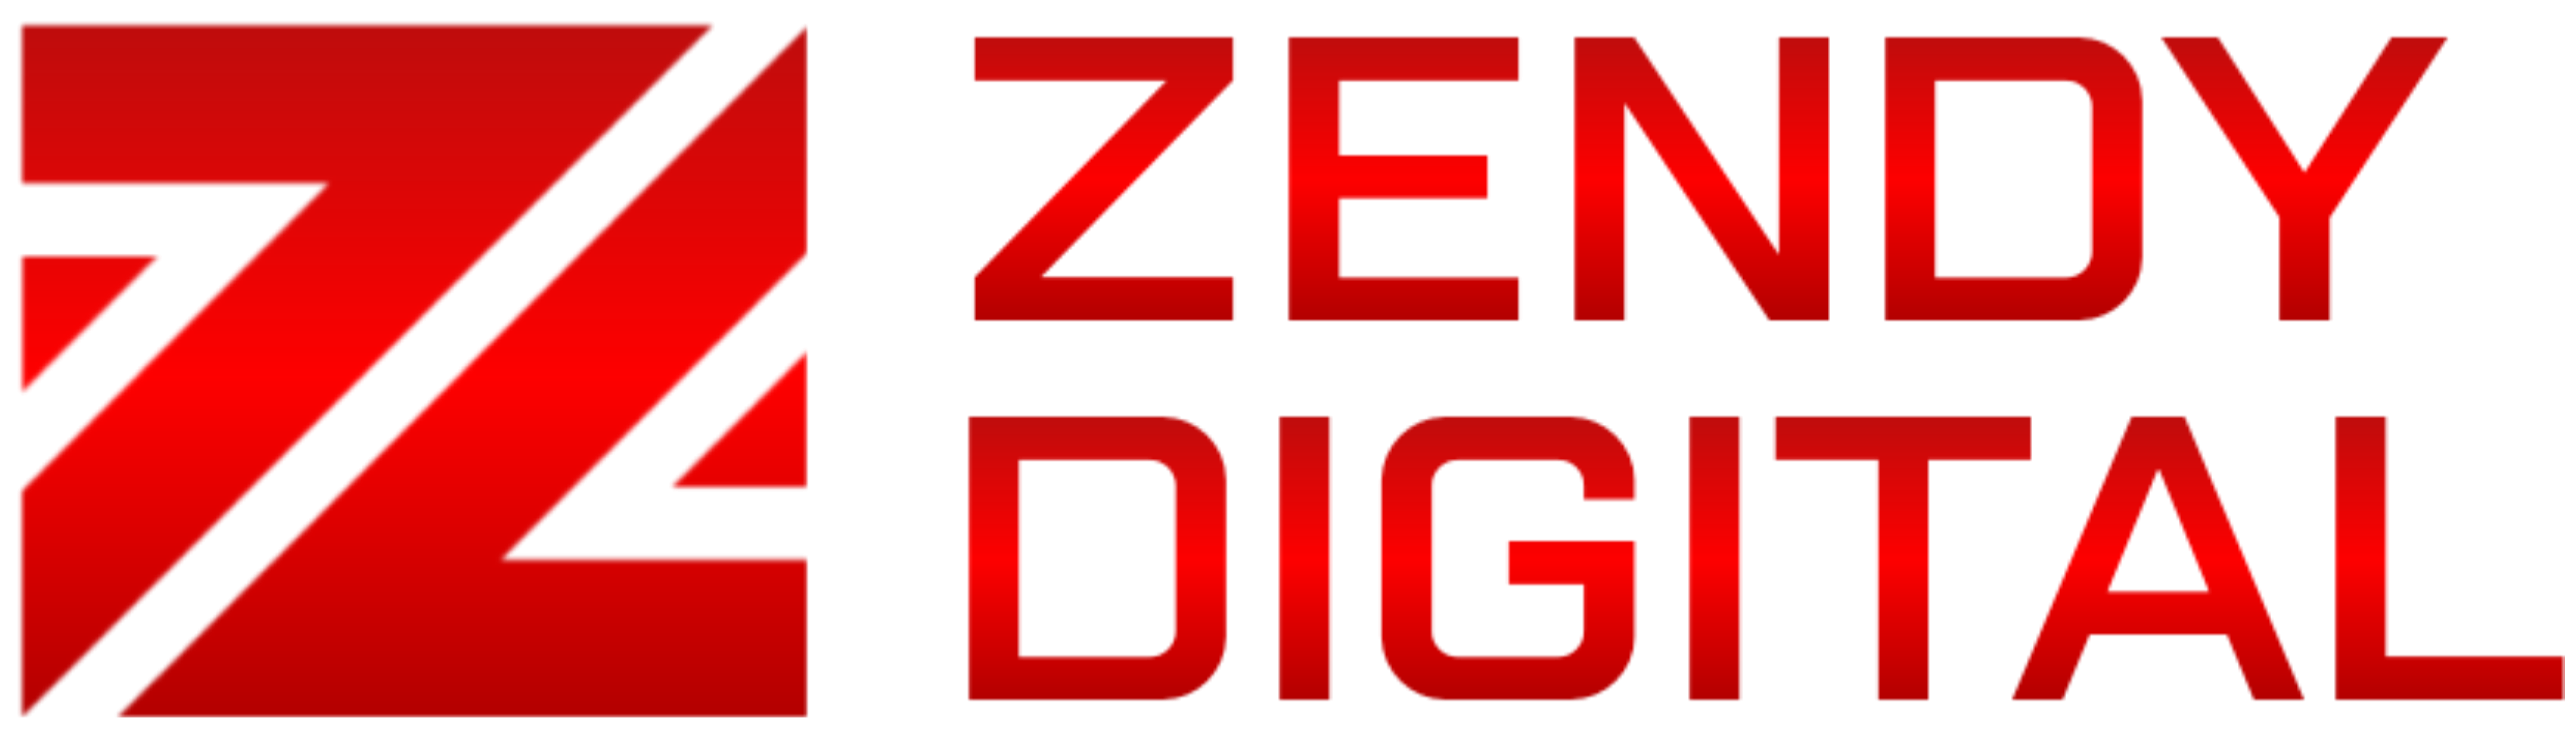 Zendydigital.com